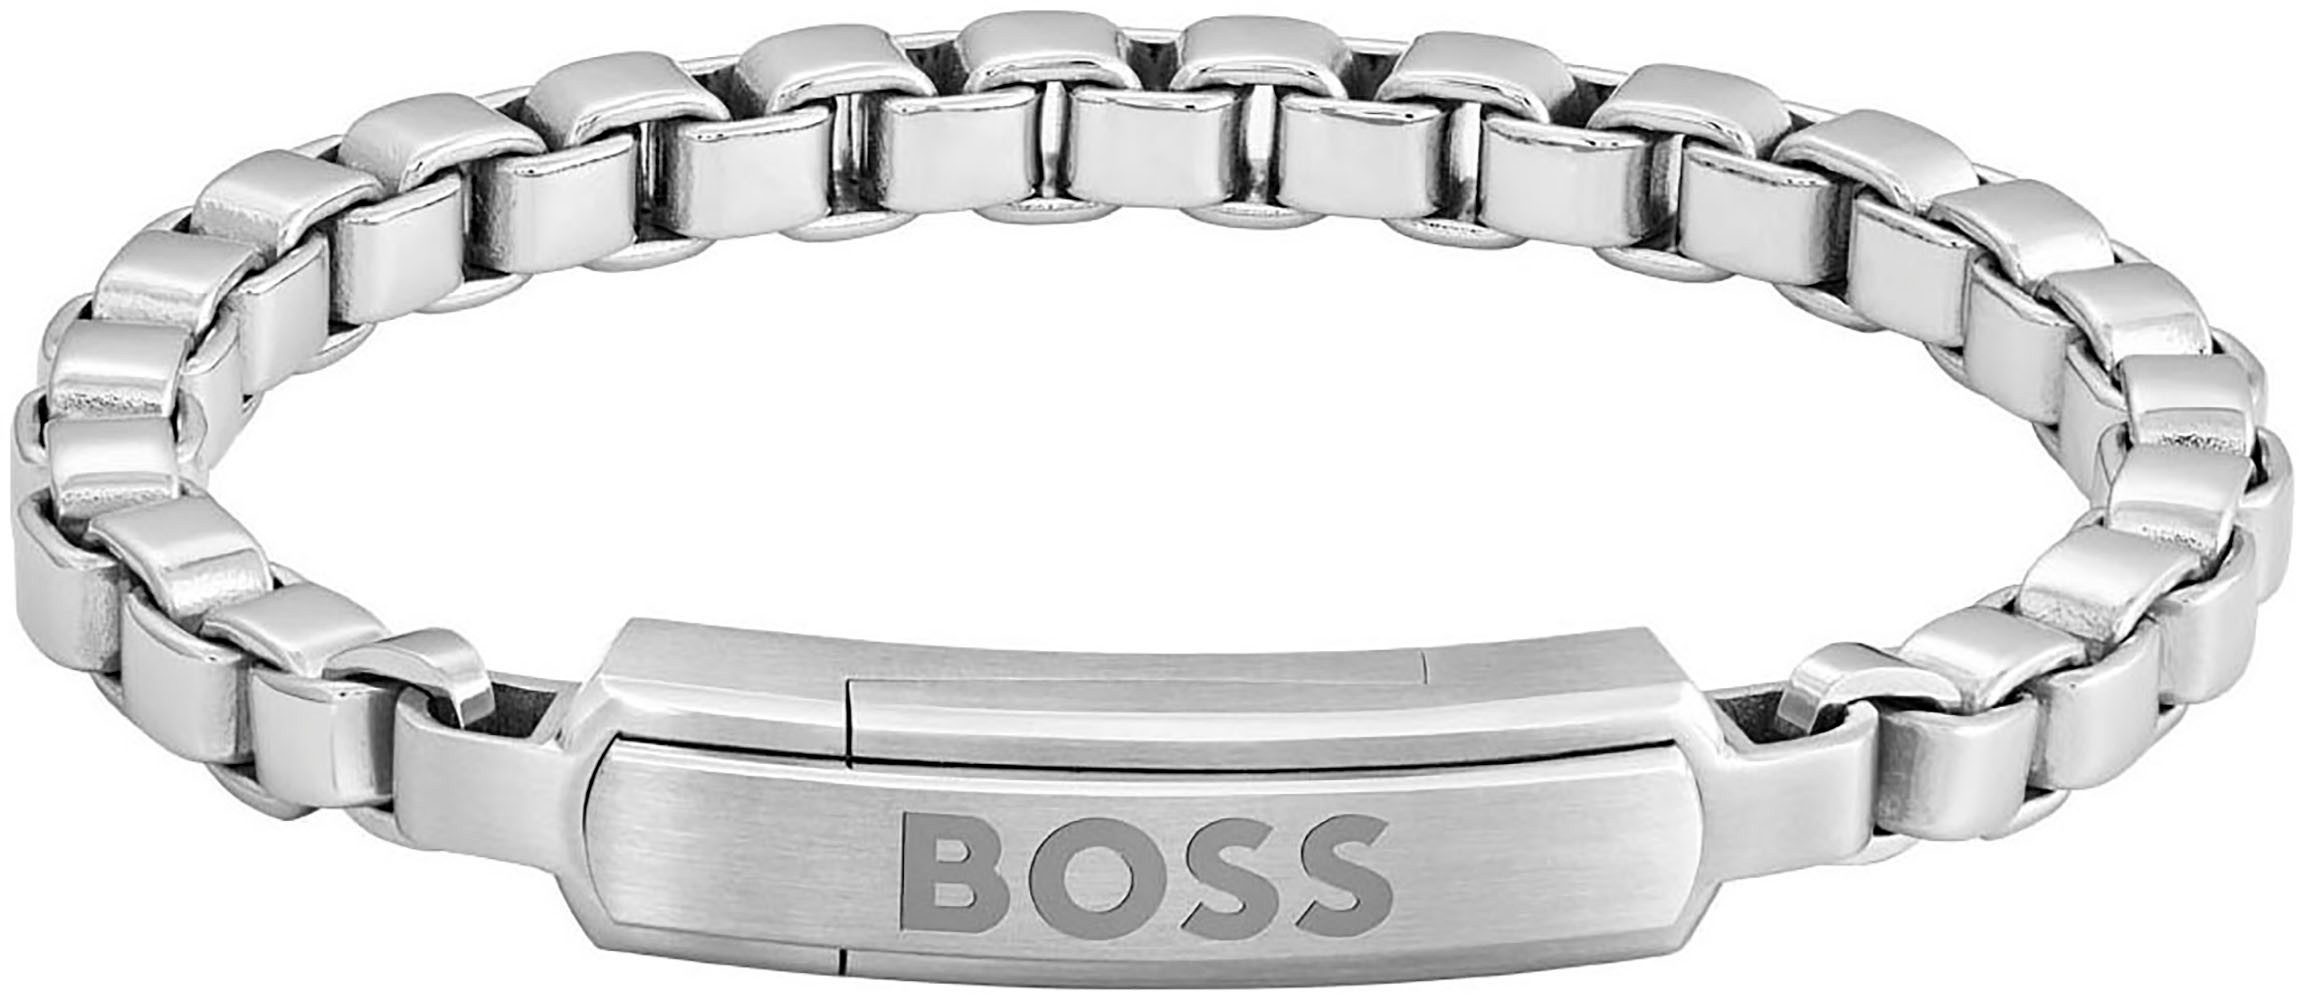 Boss Armband